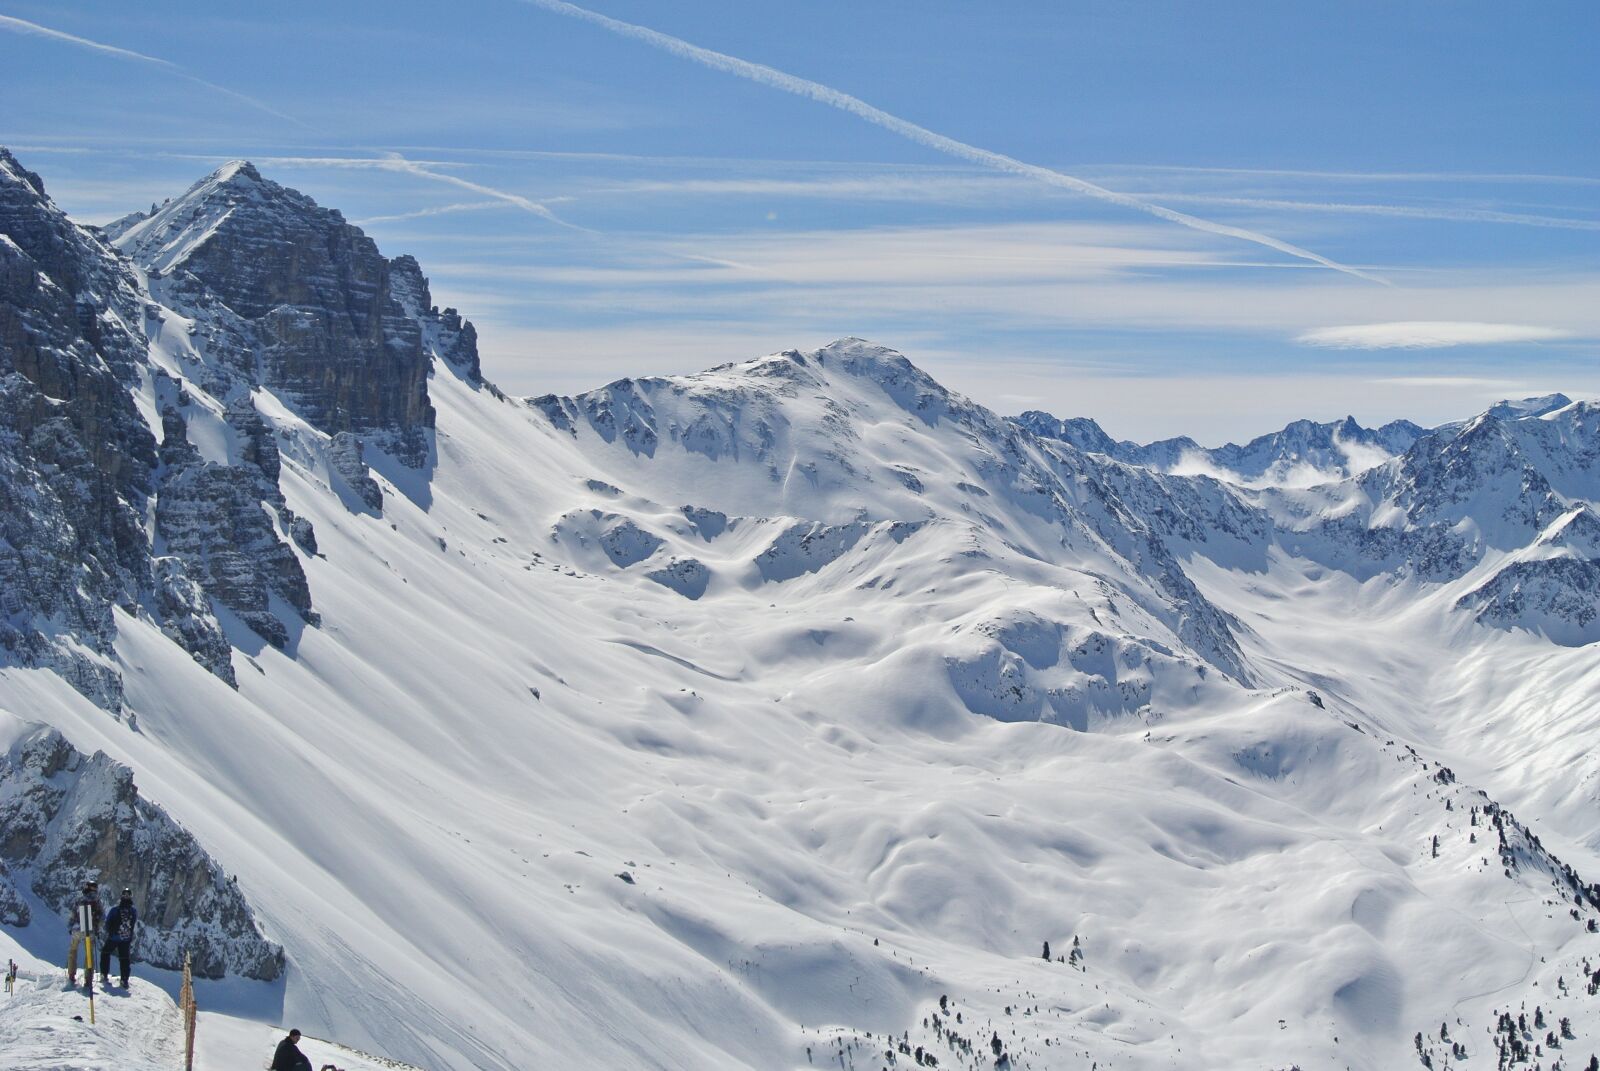 Nikon 1 J1 sample photo. Alpine, mountains, ski photography